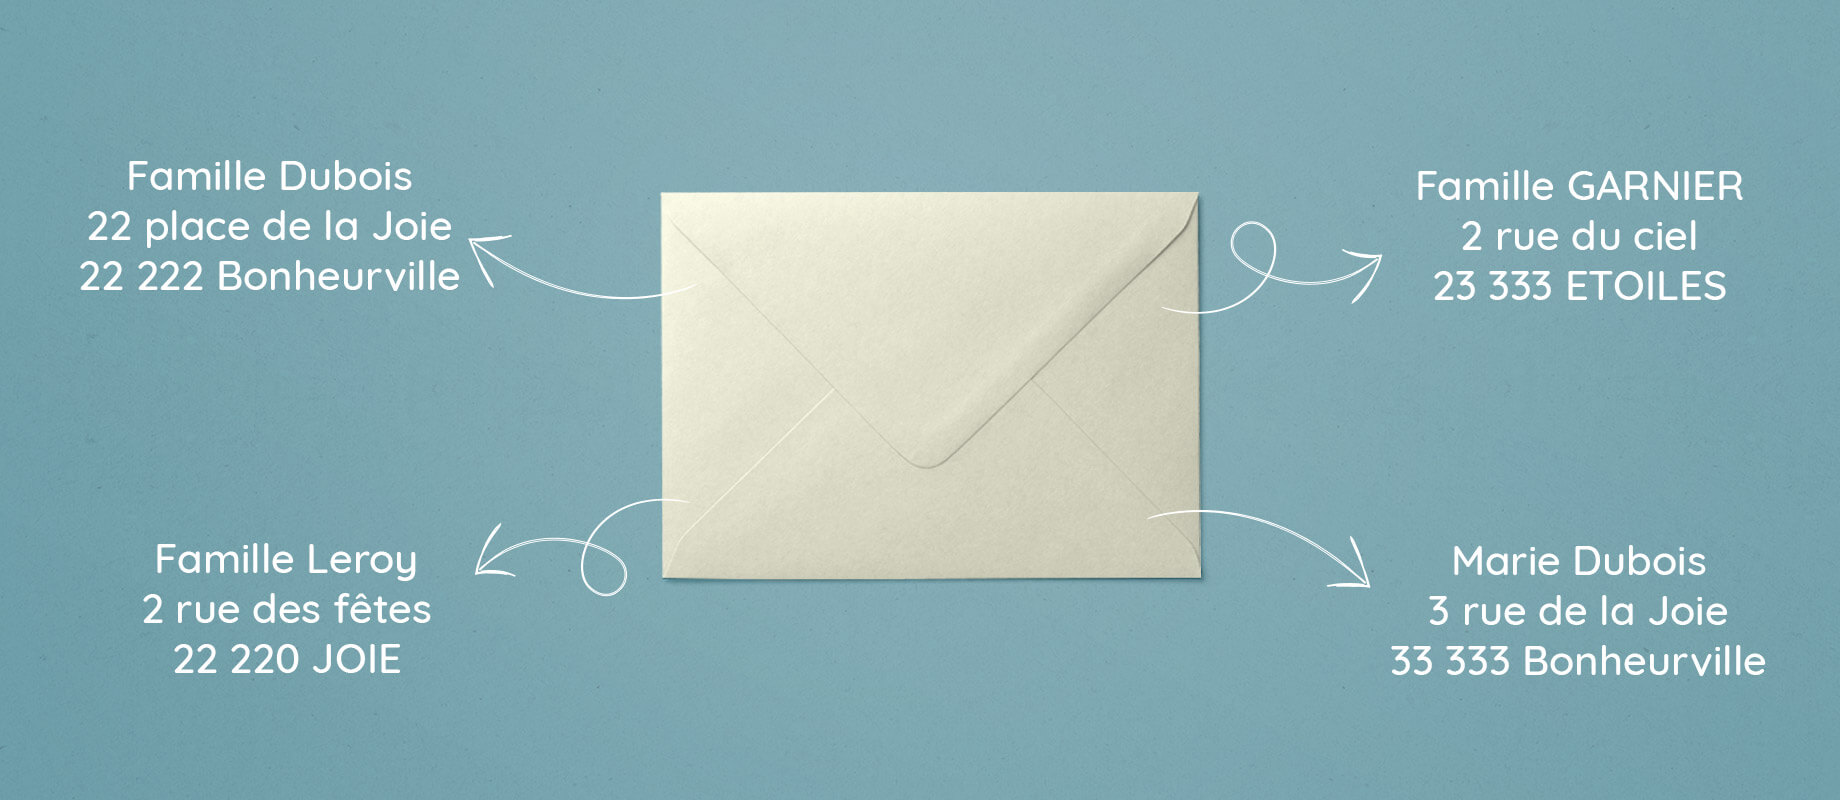 Une enveloppe blanche est entourée d'adresses de destinataires différents sur fond bleu.